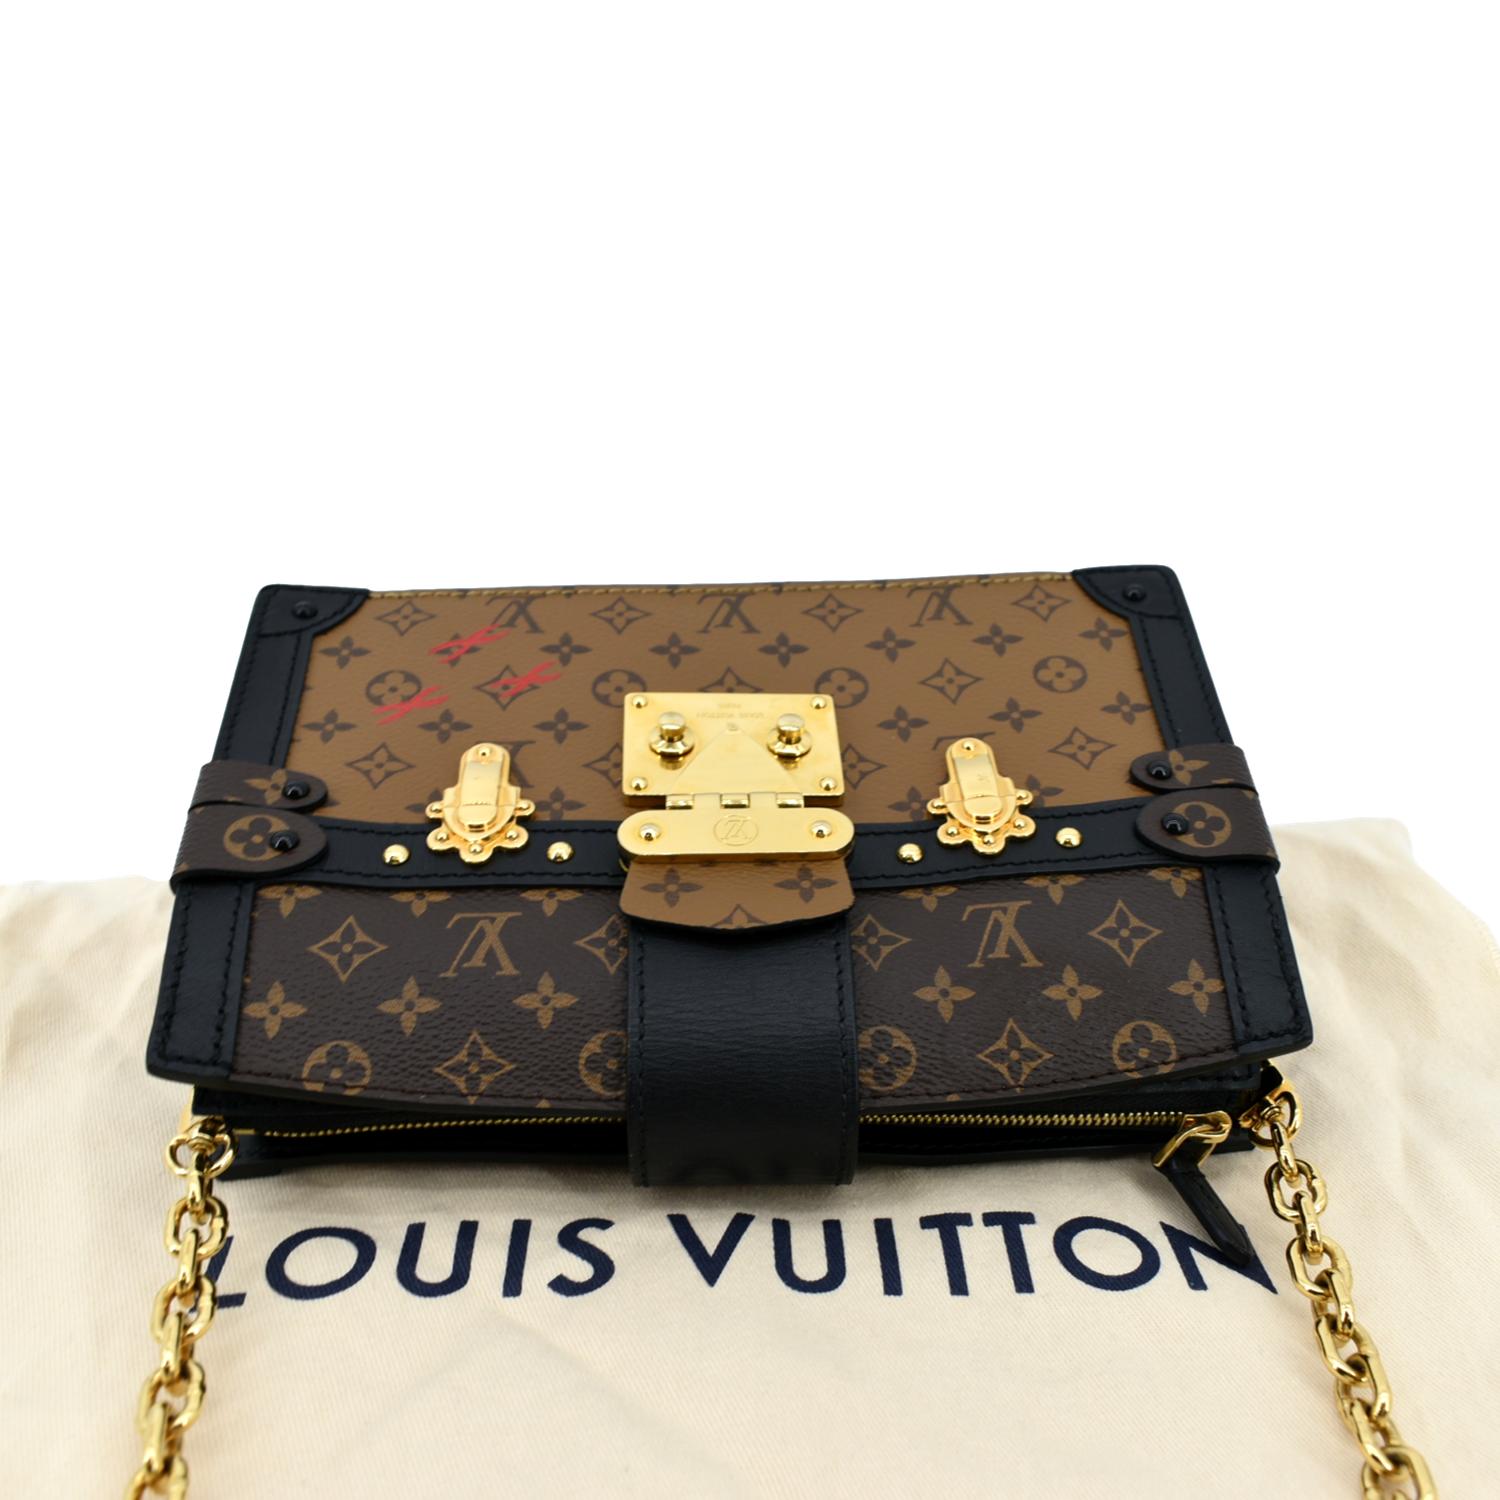 Louis Vuitton Trunk Clutch in Monogram